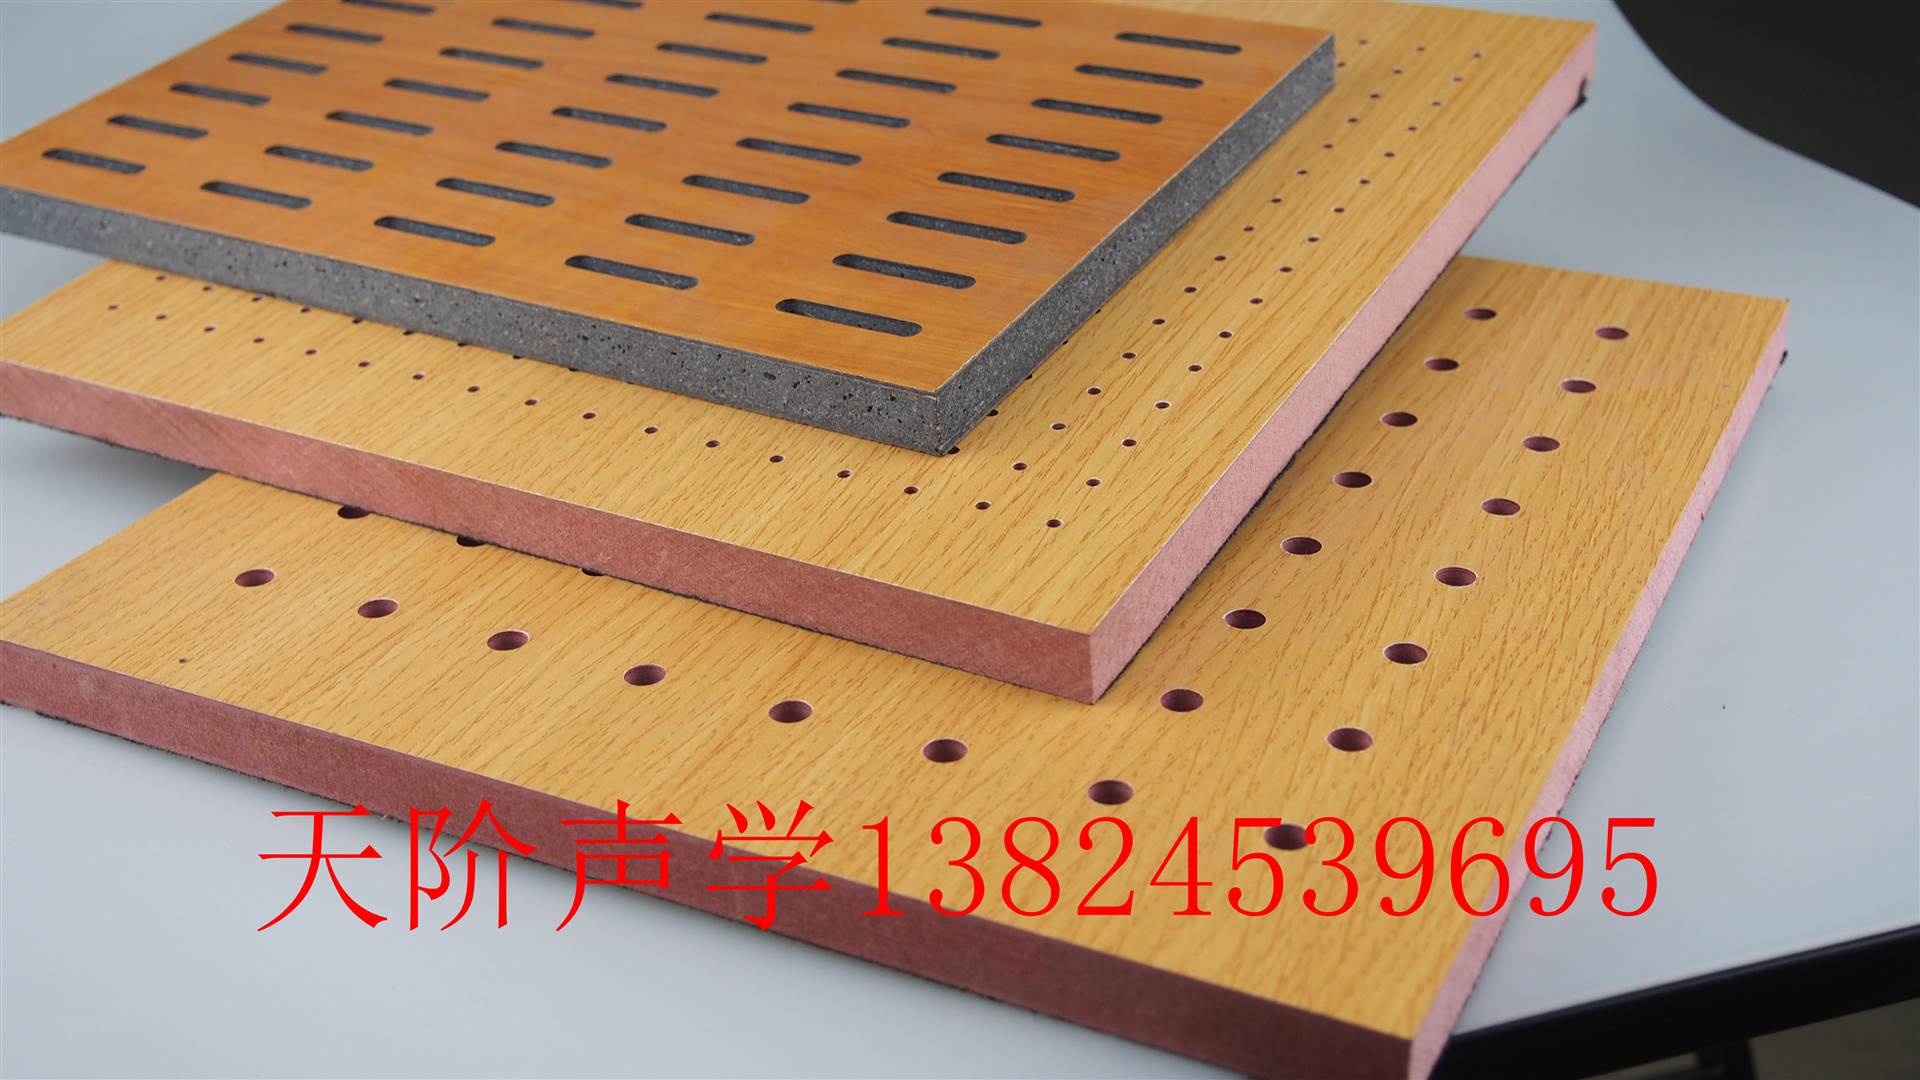 天阶声学孔木吸音板采用的中纤板,具有环保,防火,防水等性能,饰面颜色